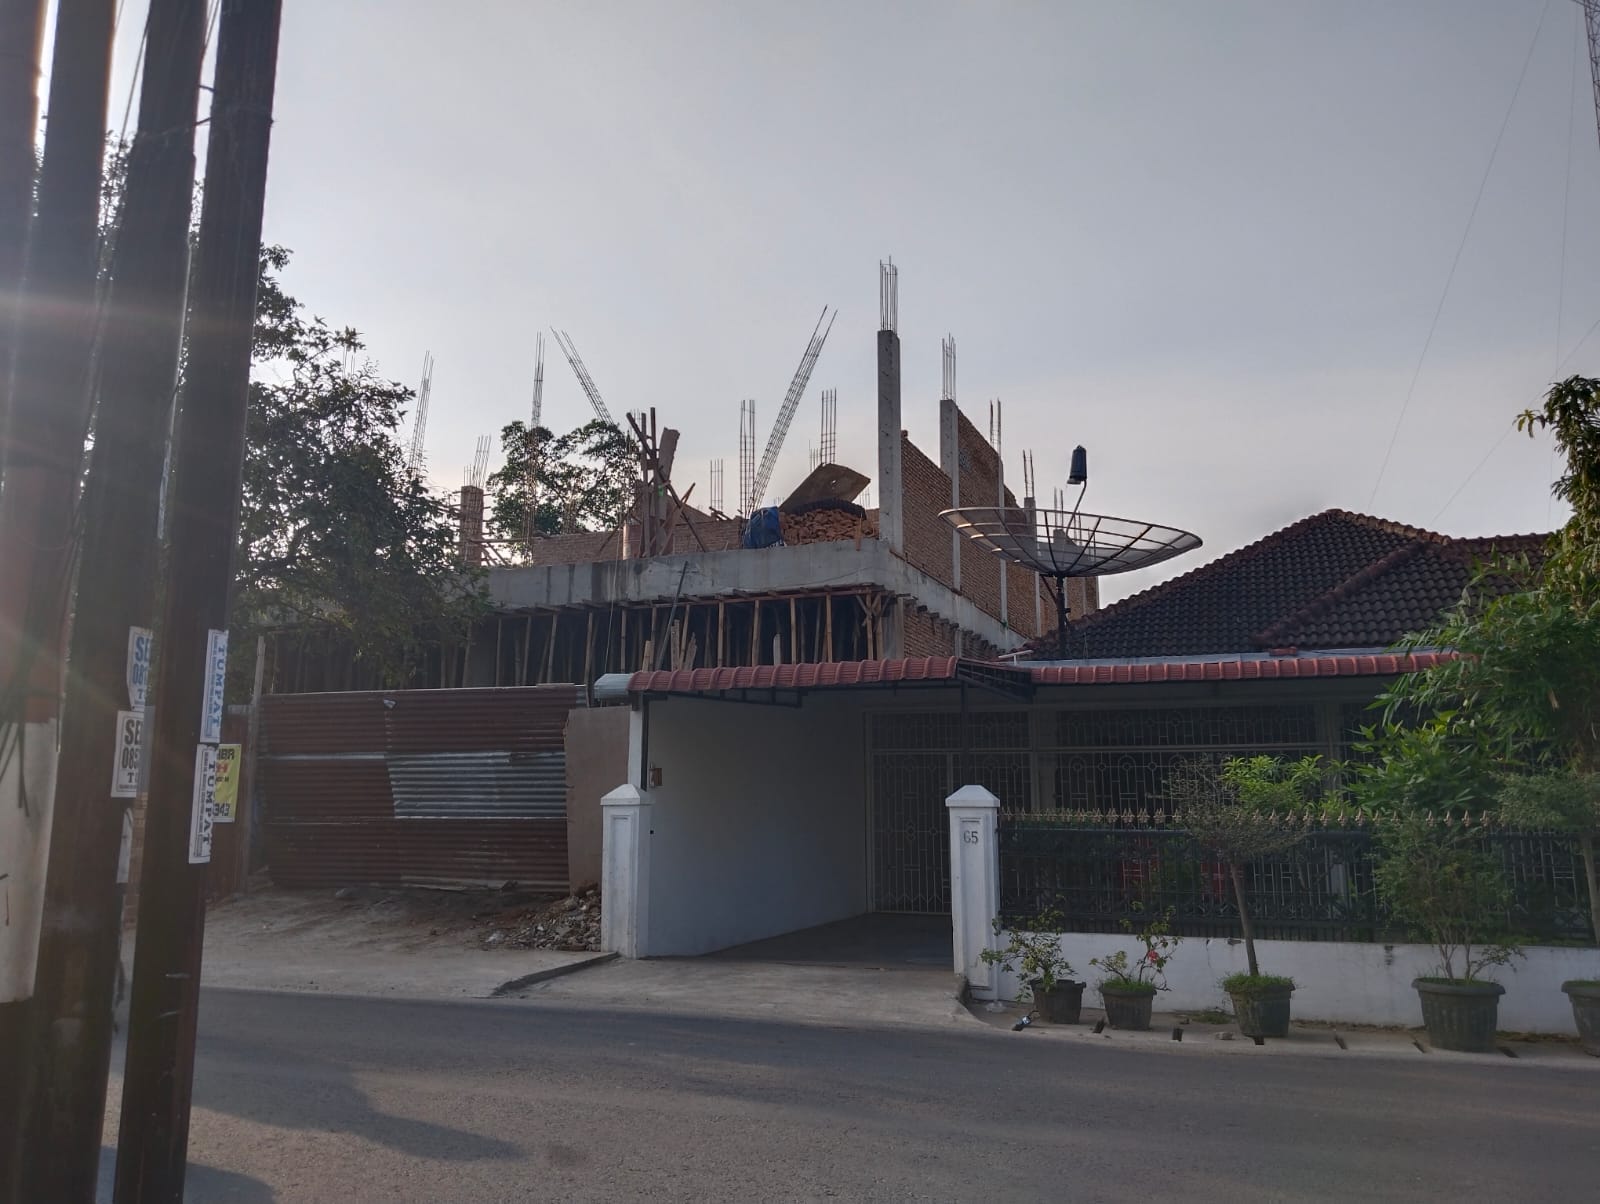 Bangunan Tanpa PBG di Jalan Danau Singkarak, Kasi Trantib Kecamatan Medan Barat: Seharusnya Bangunan Itu Ada PBG Baru Dibangun